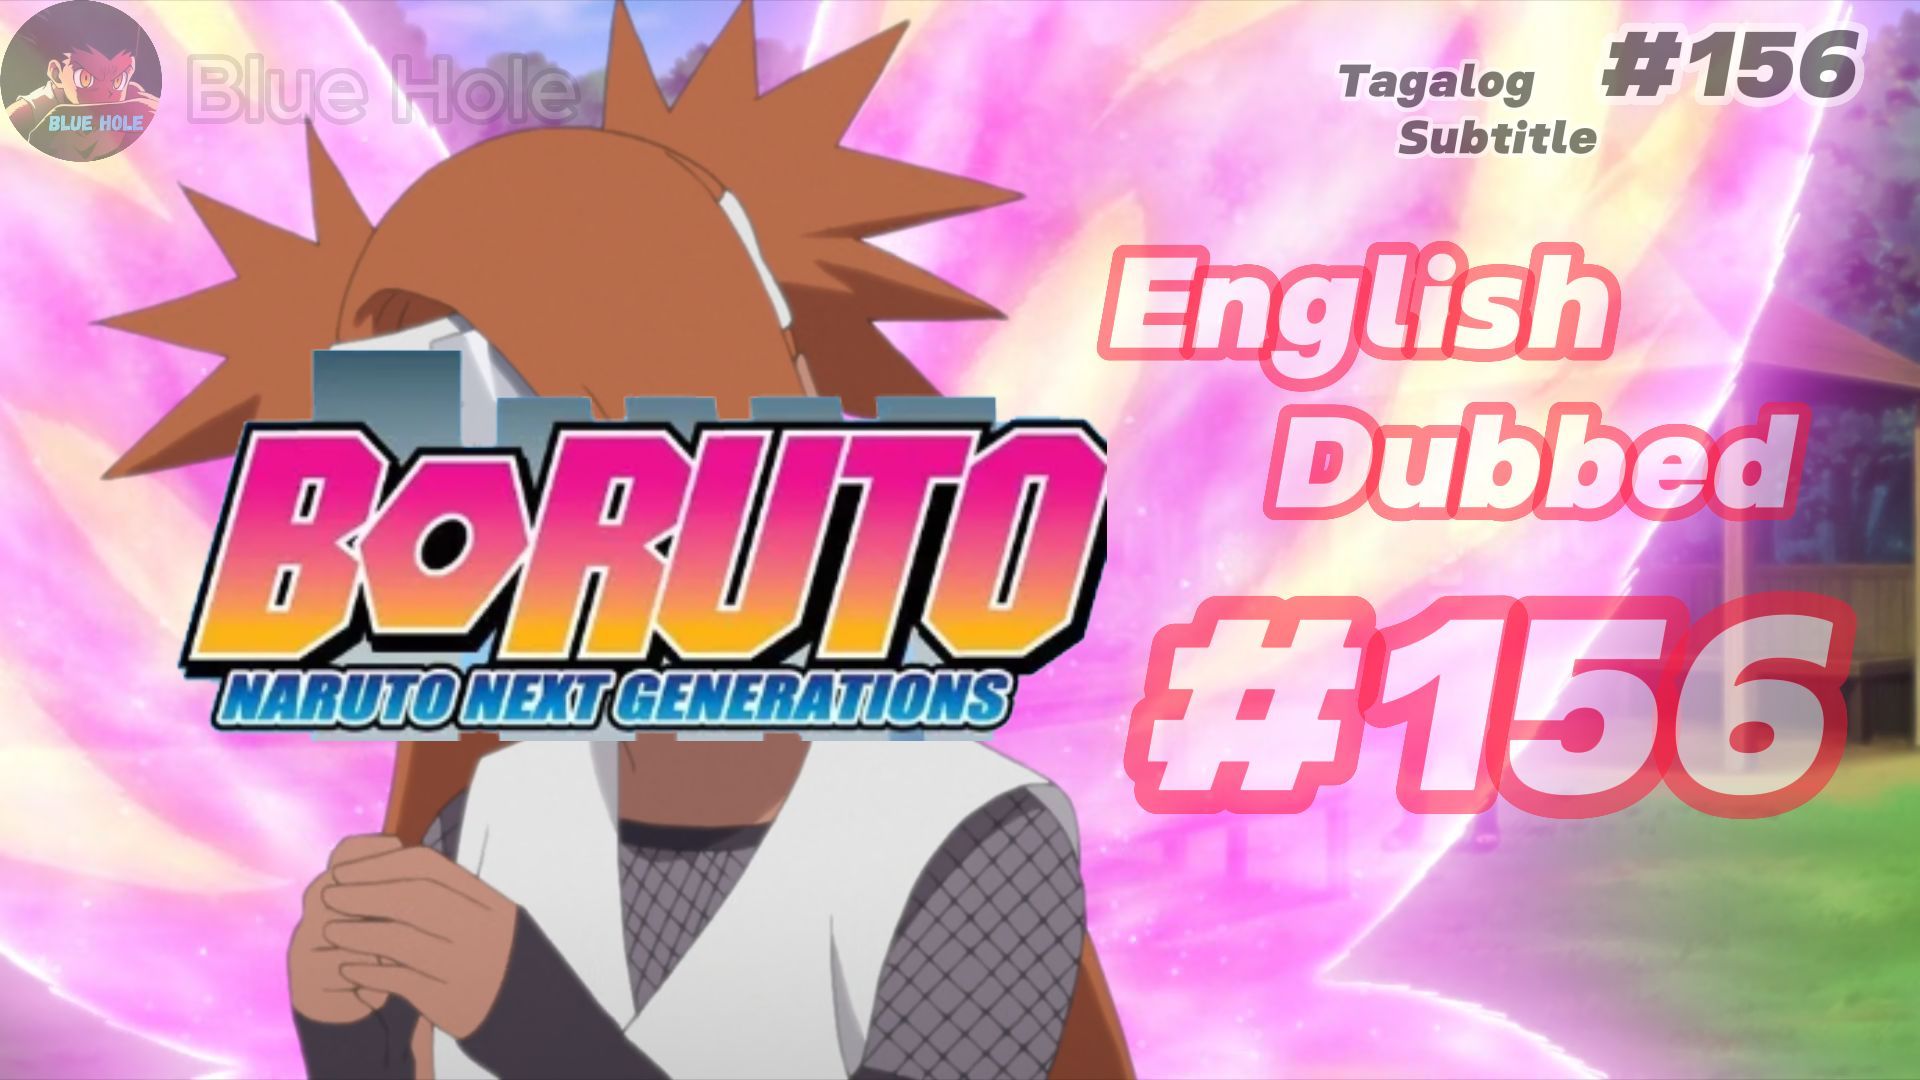 Assistir Boruto: Naruto Next Generations Episodio 156 Online